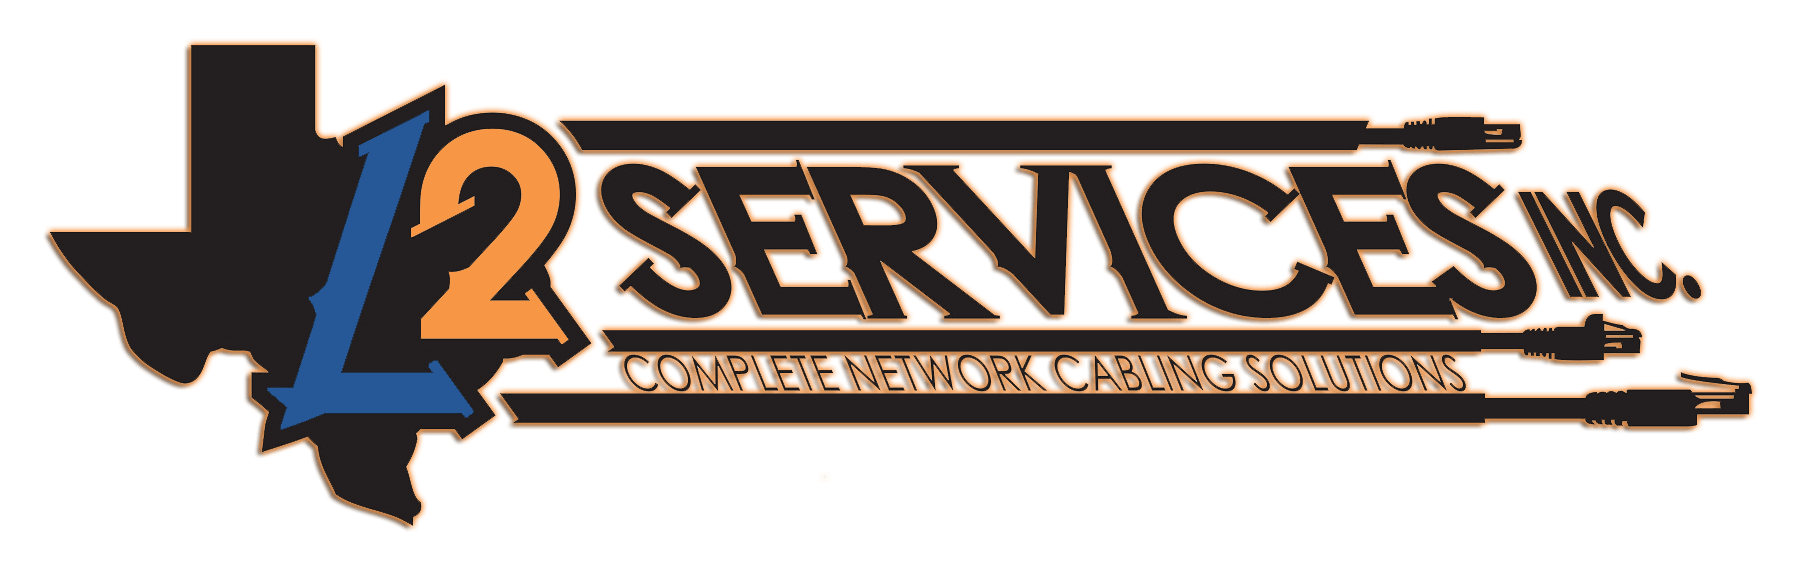 L2 Services, Inc.